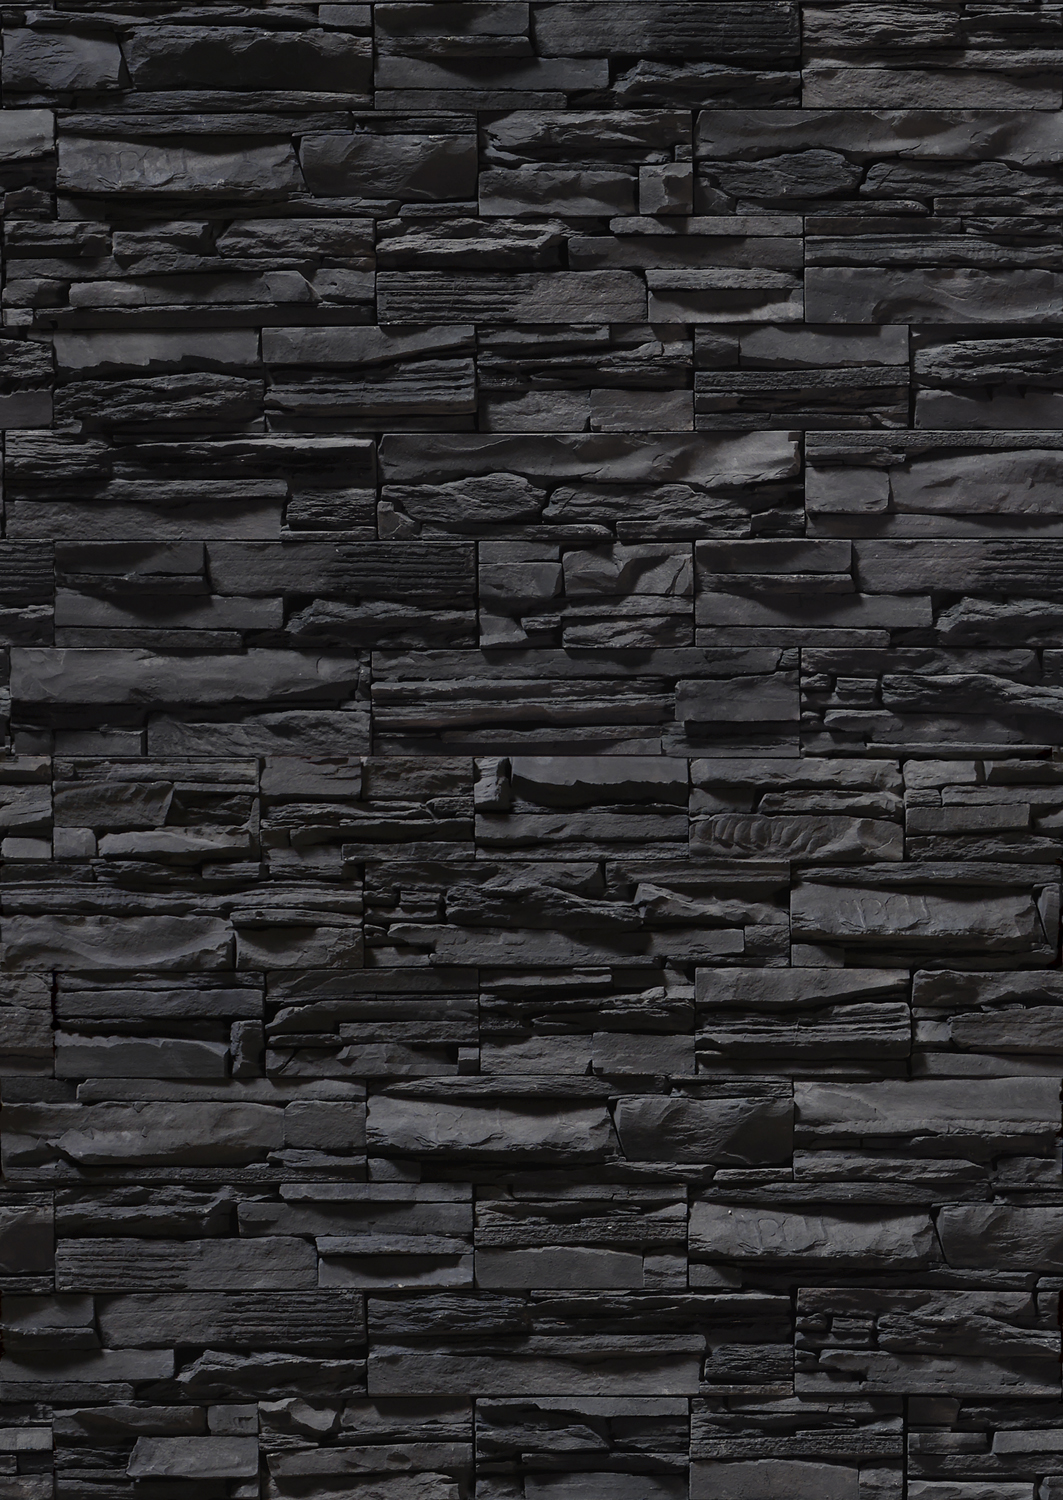 черная каменная стена, каменные блоки, кирпичи из камня, фон, текстура, скачать